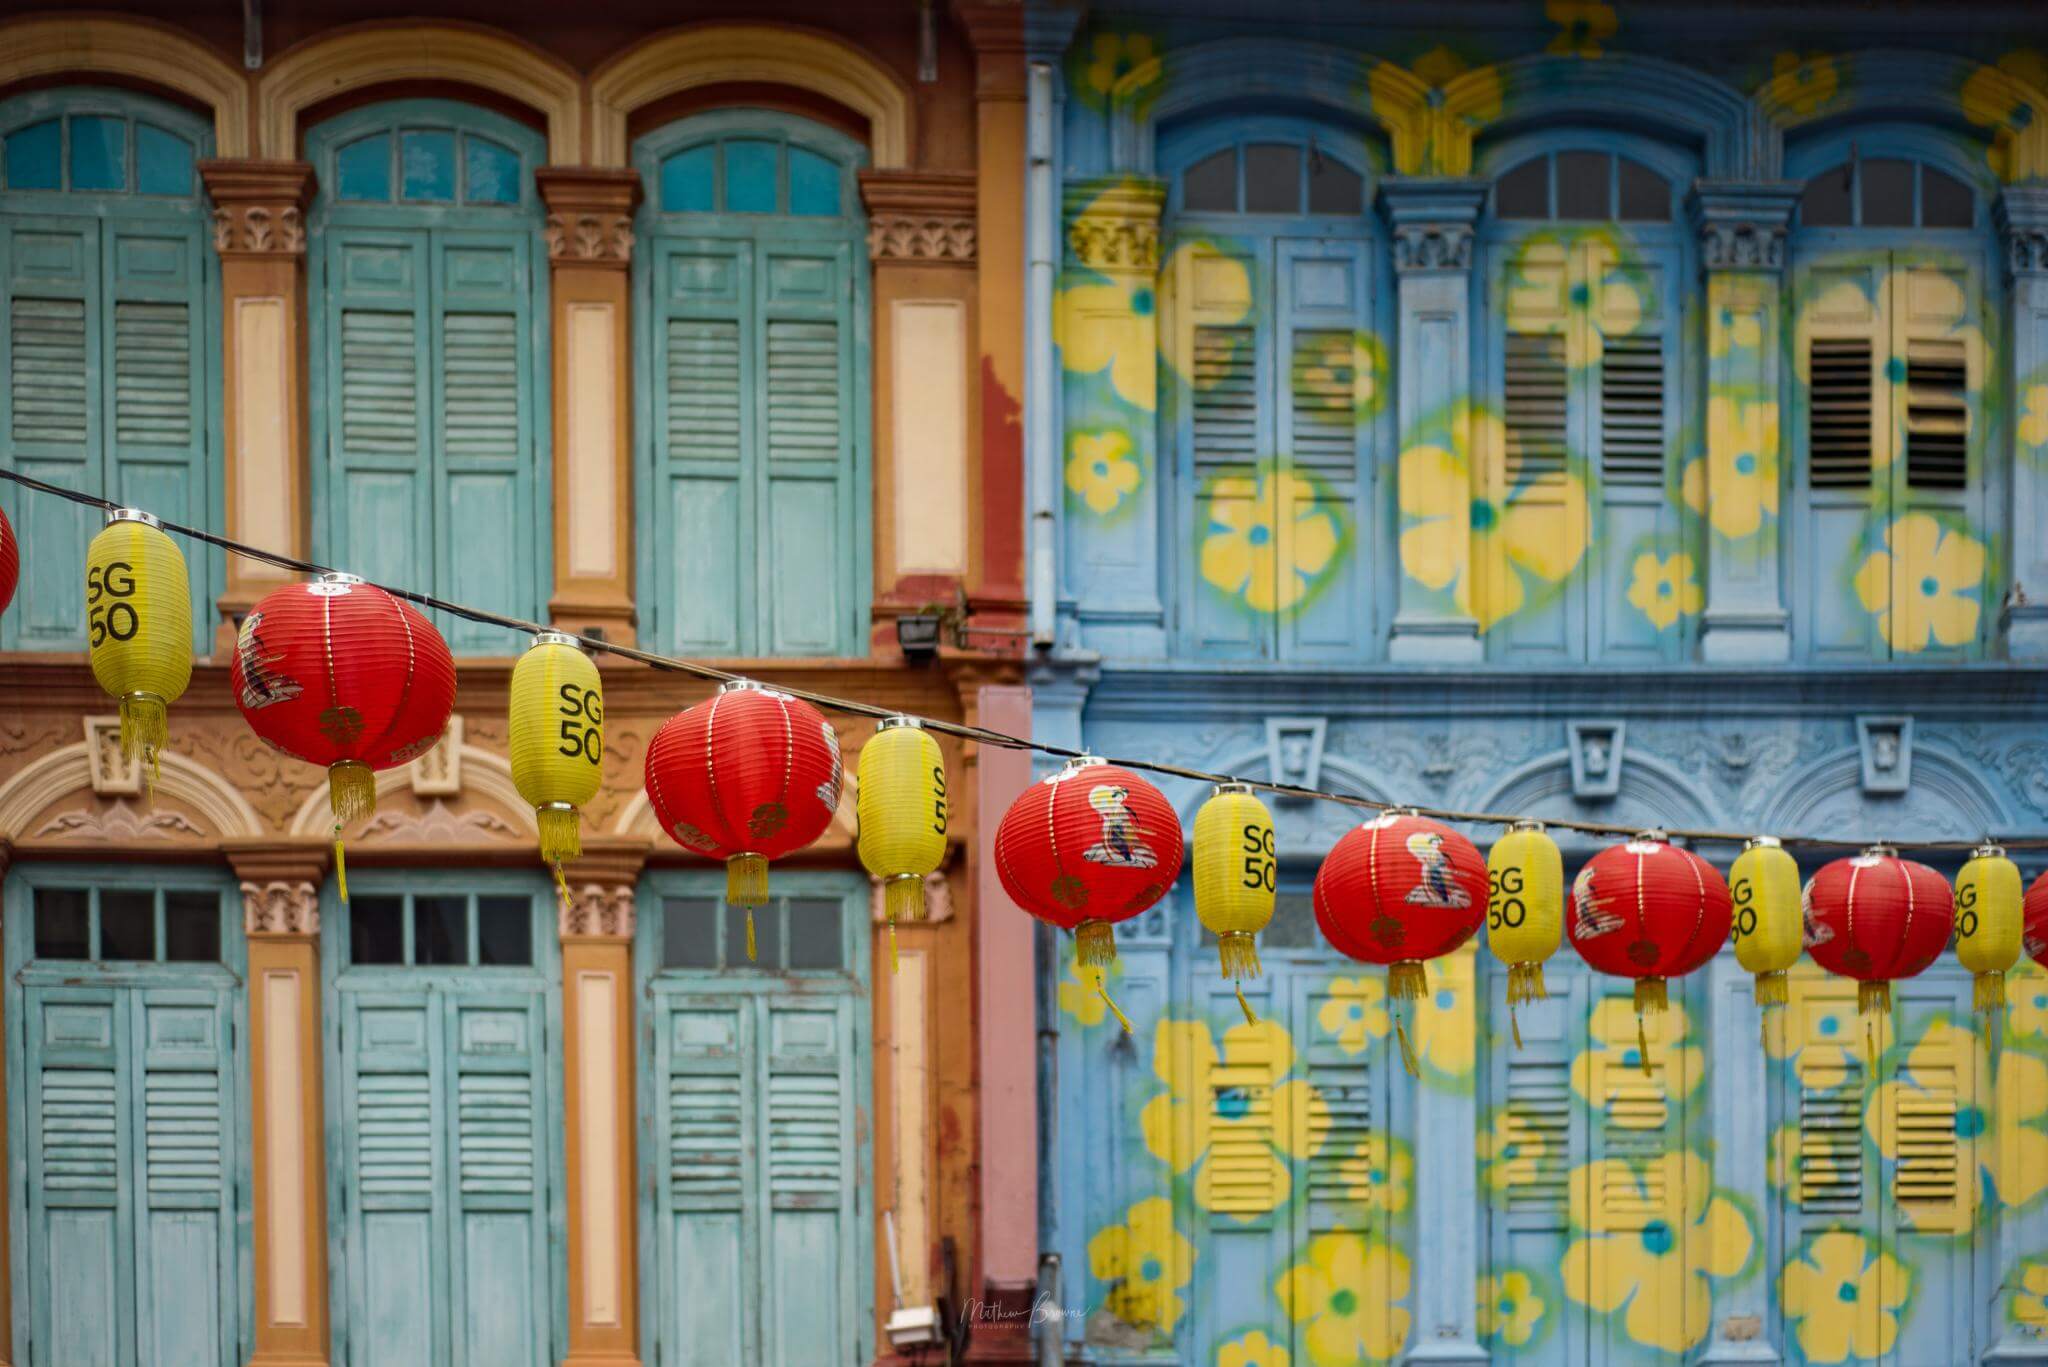 photos of Singapore - Chinatown